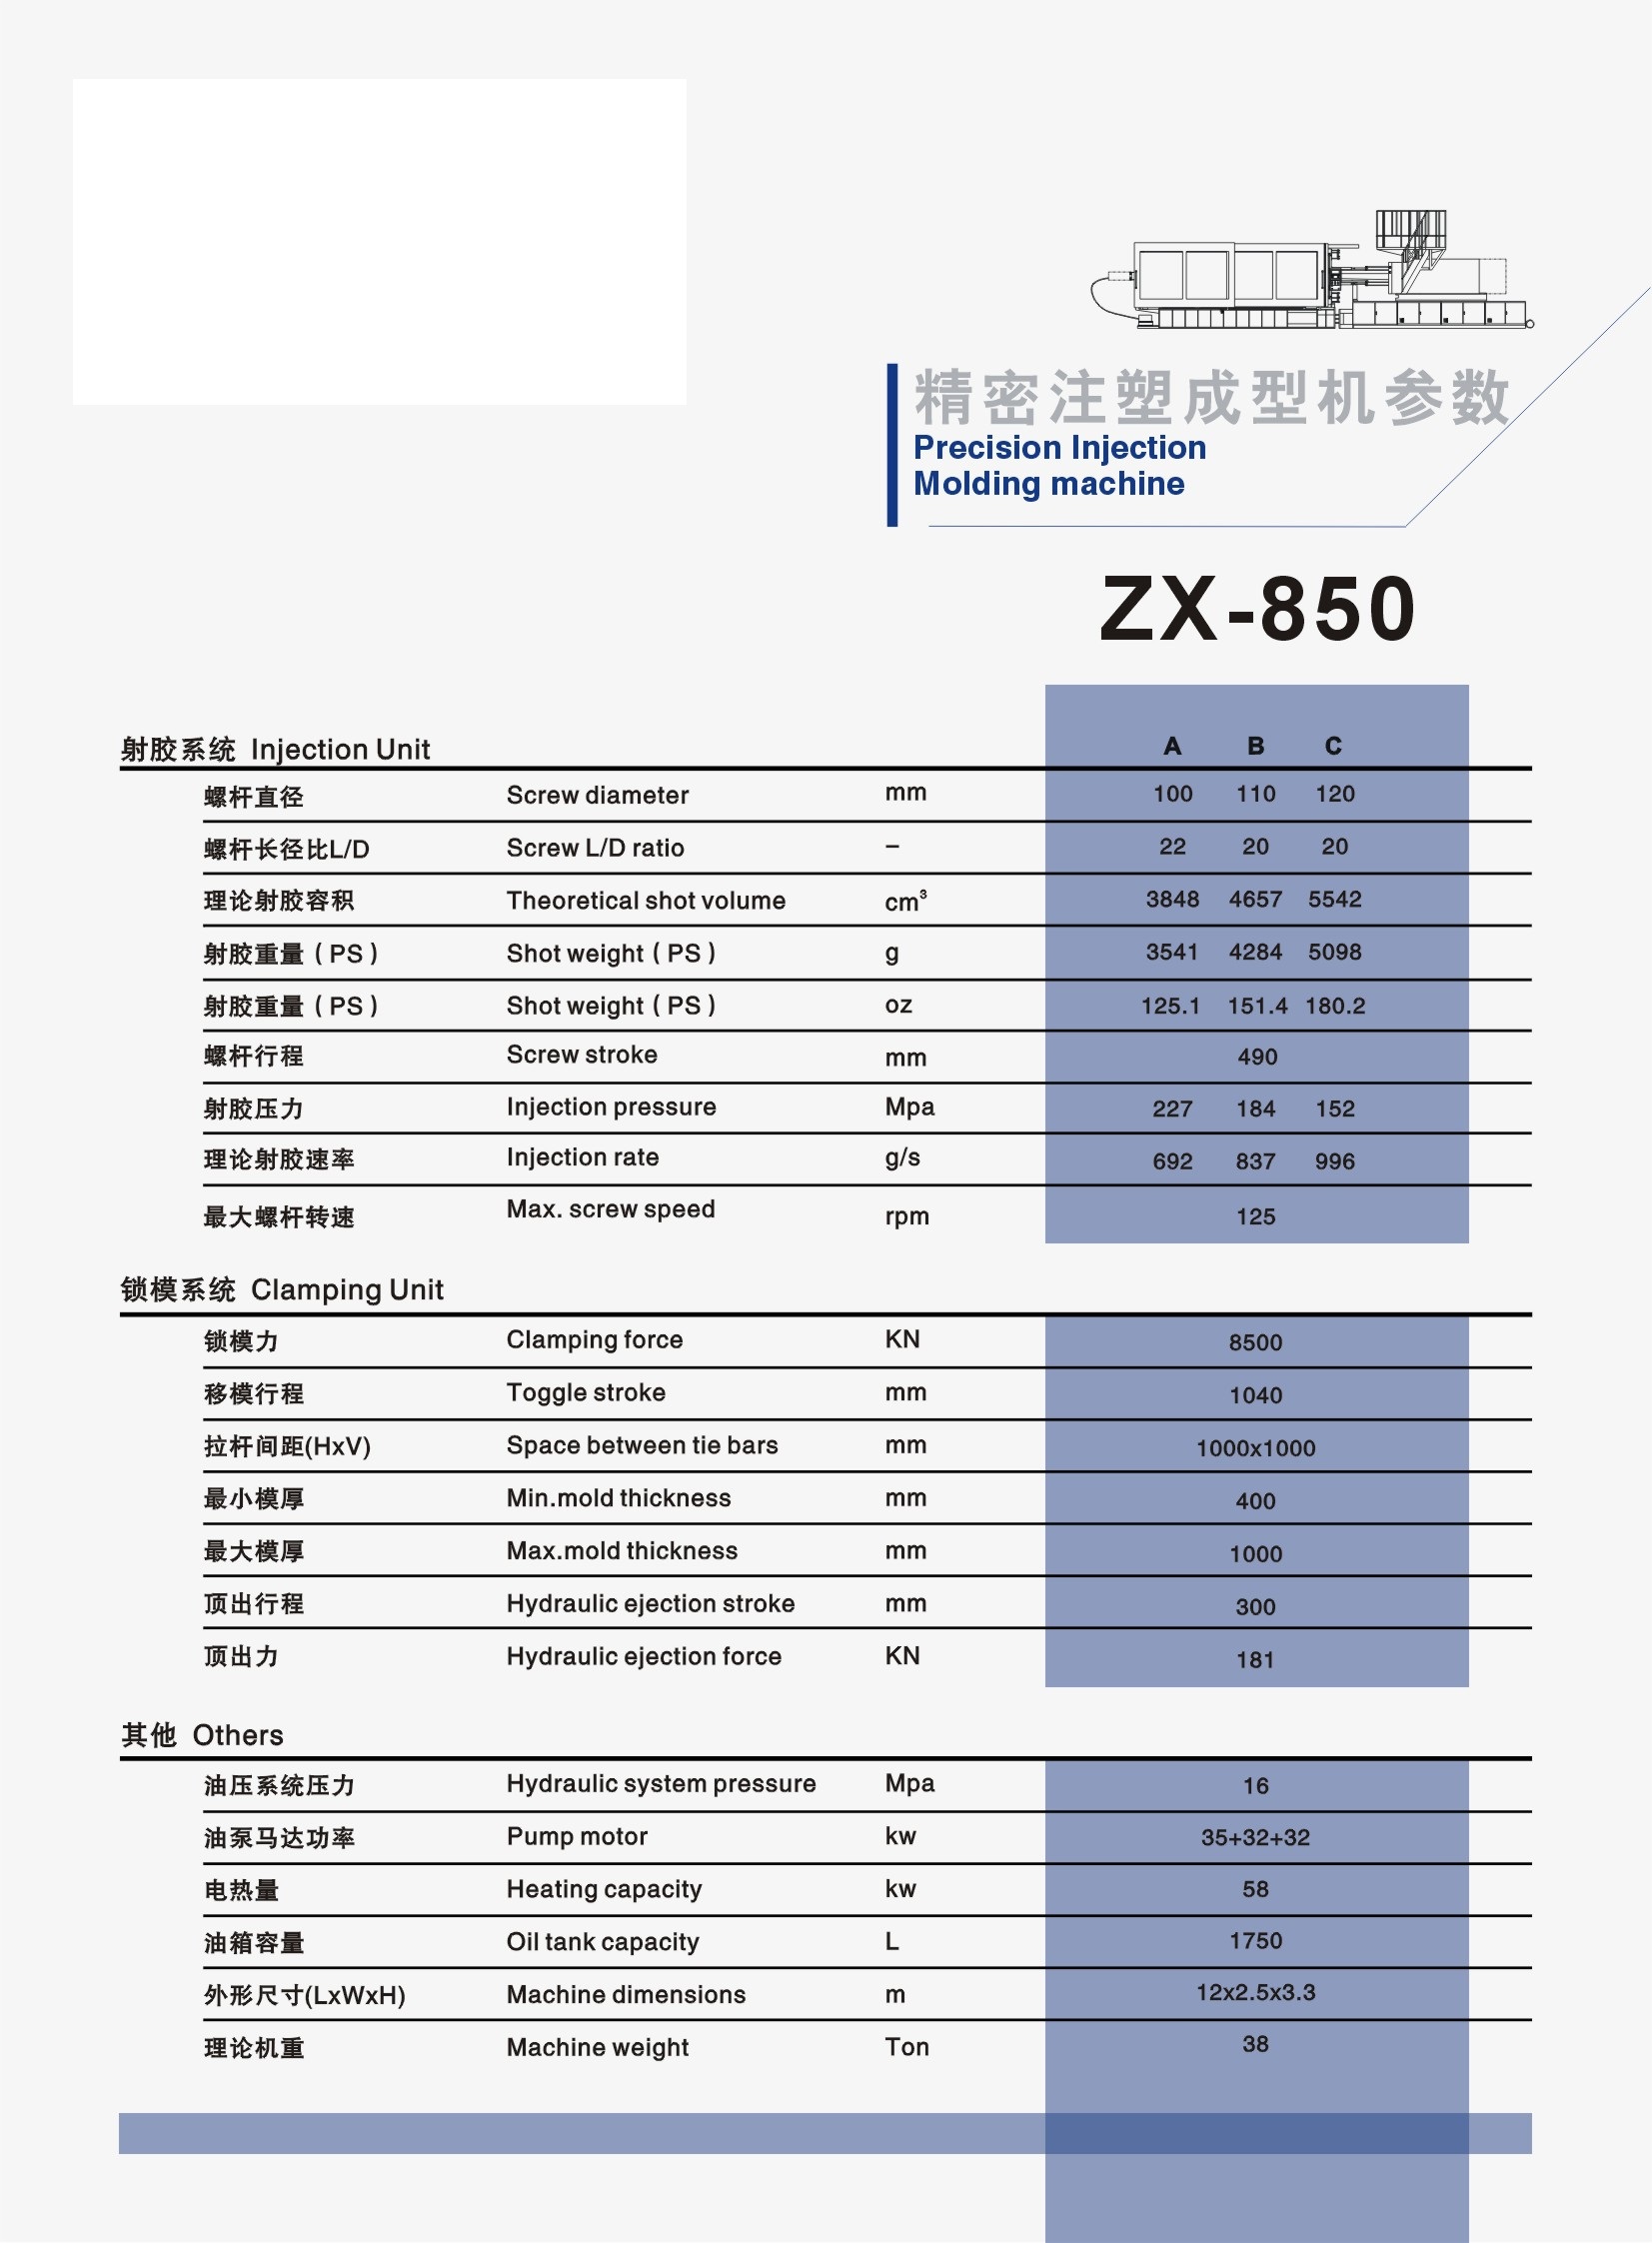 ZX-850.jpg